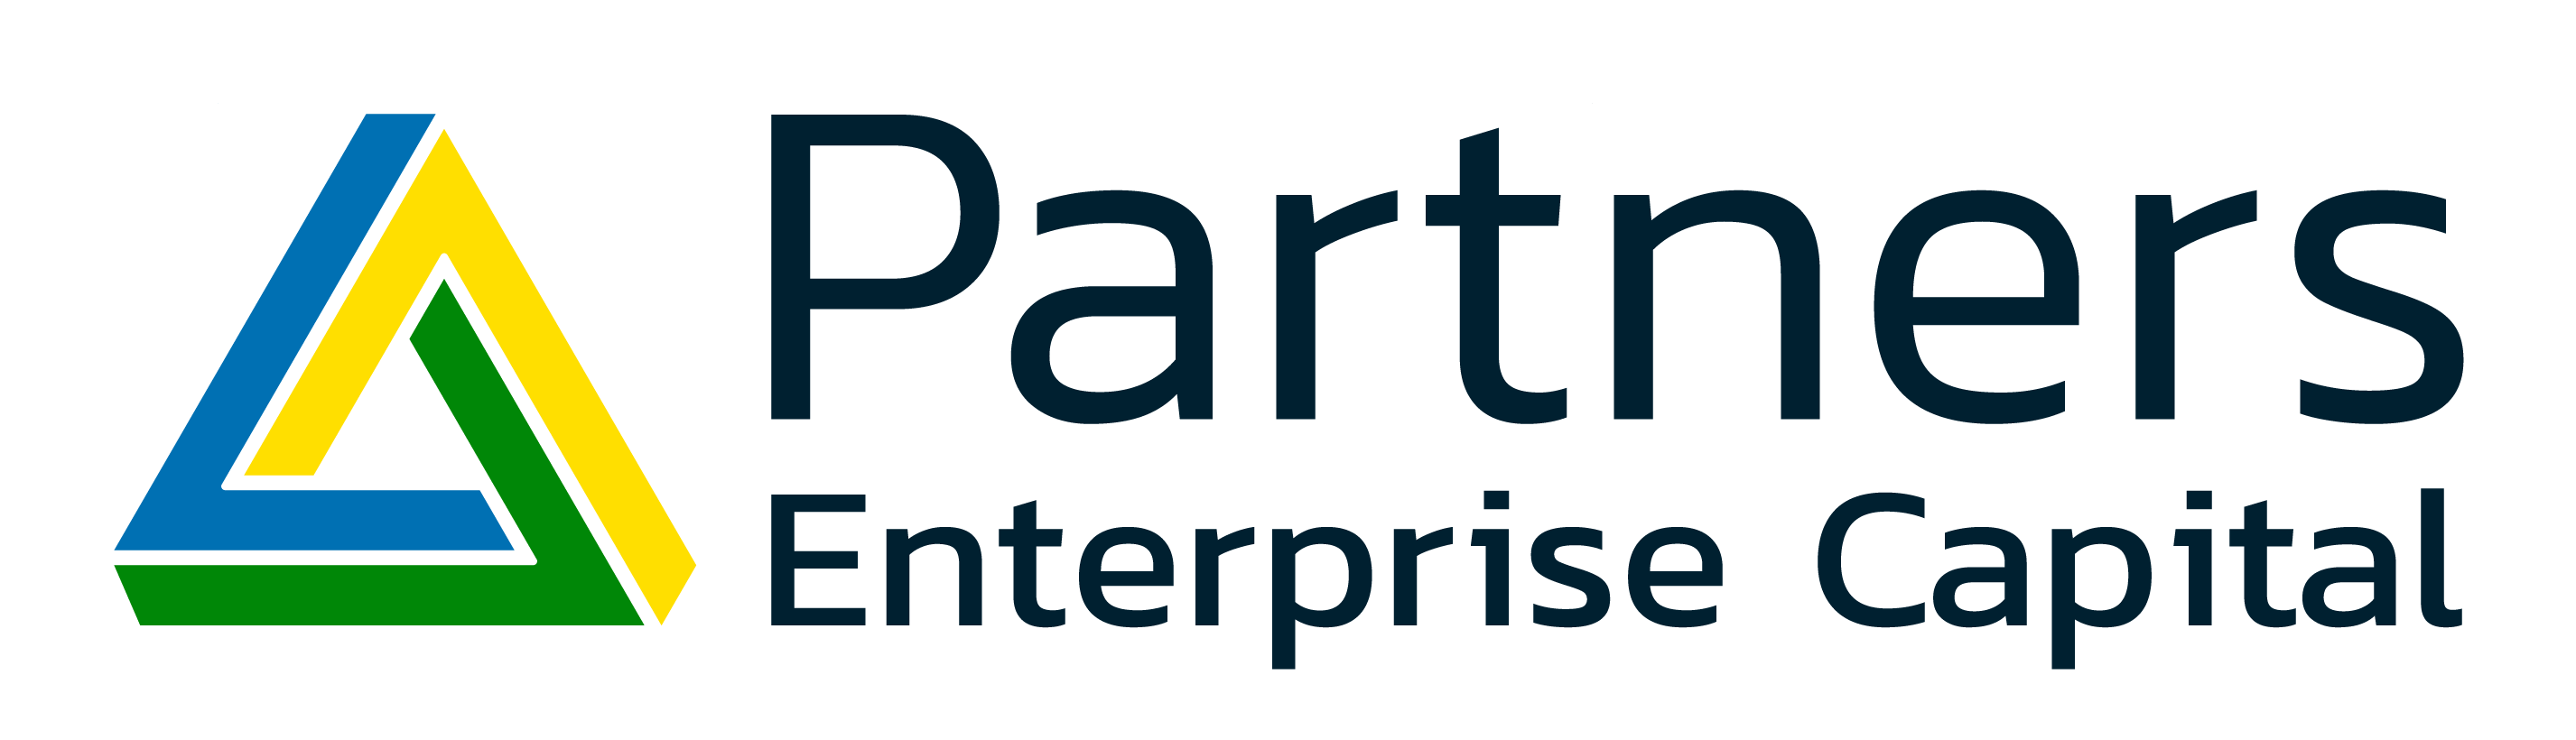 Partners Enterprise Capital